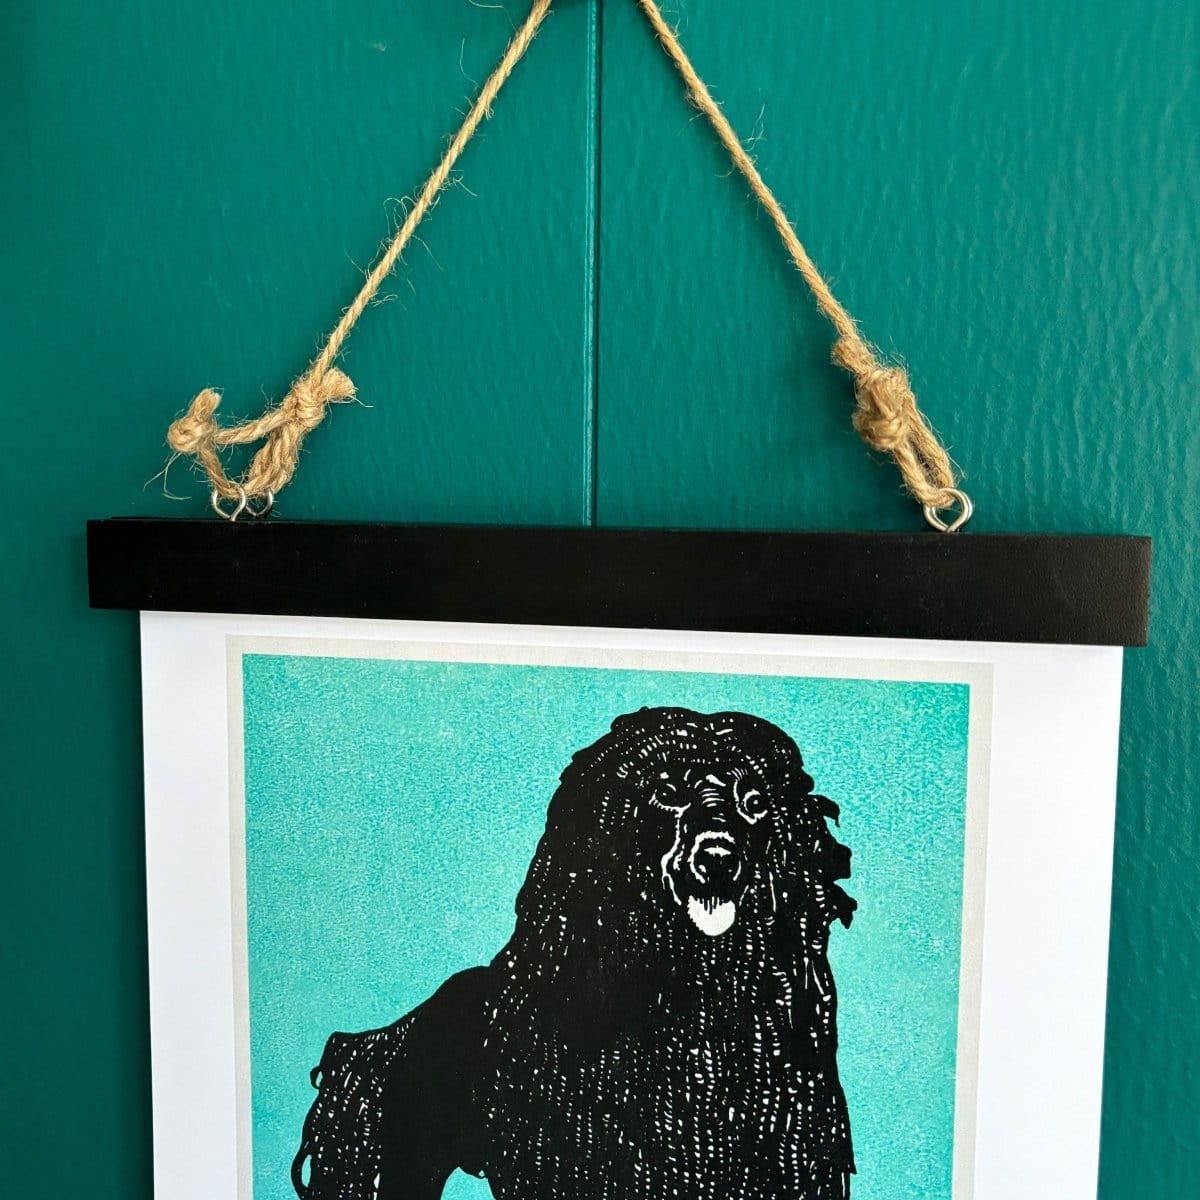 Black Magnetic Poster Hanger, wooden poster hanging kit